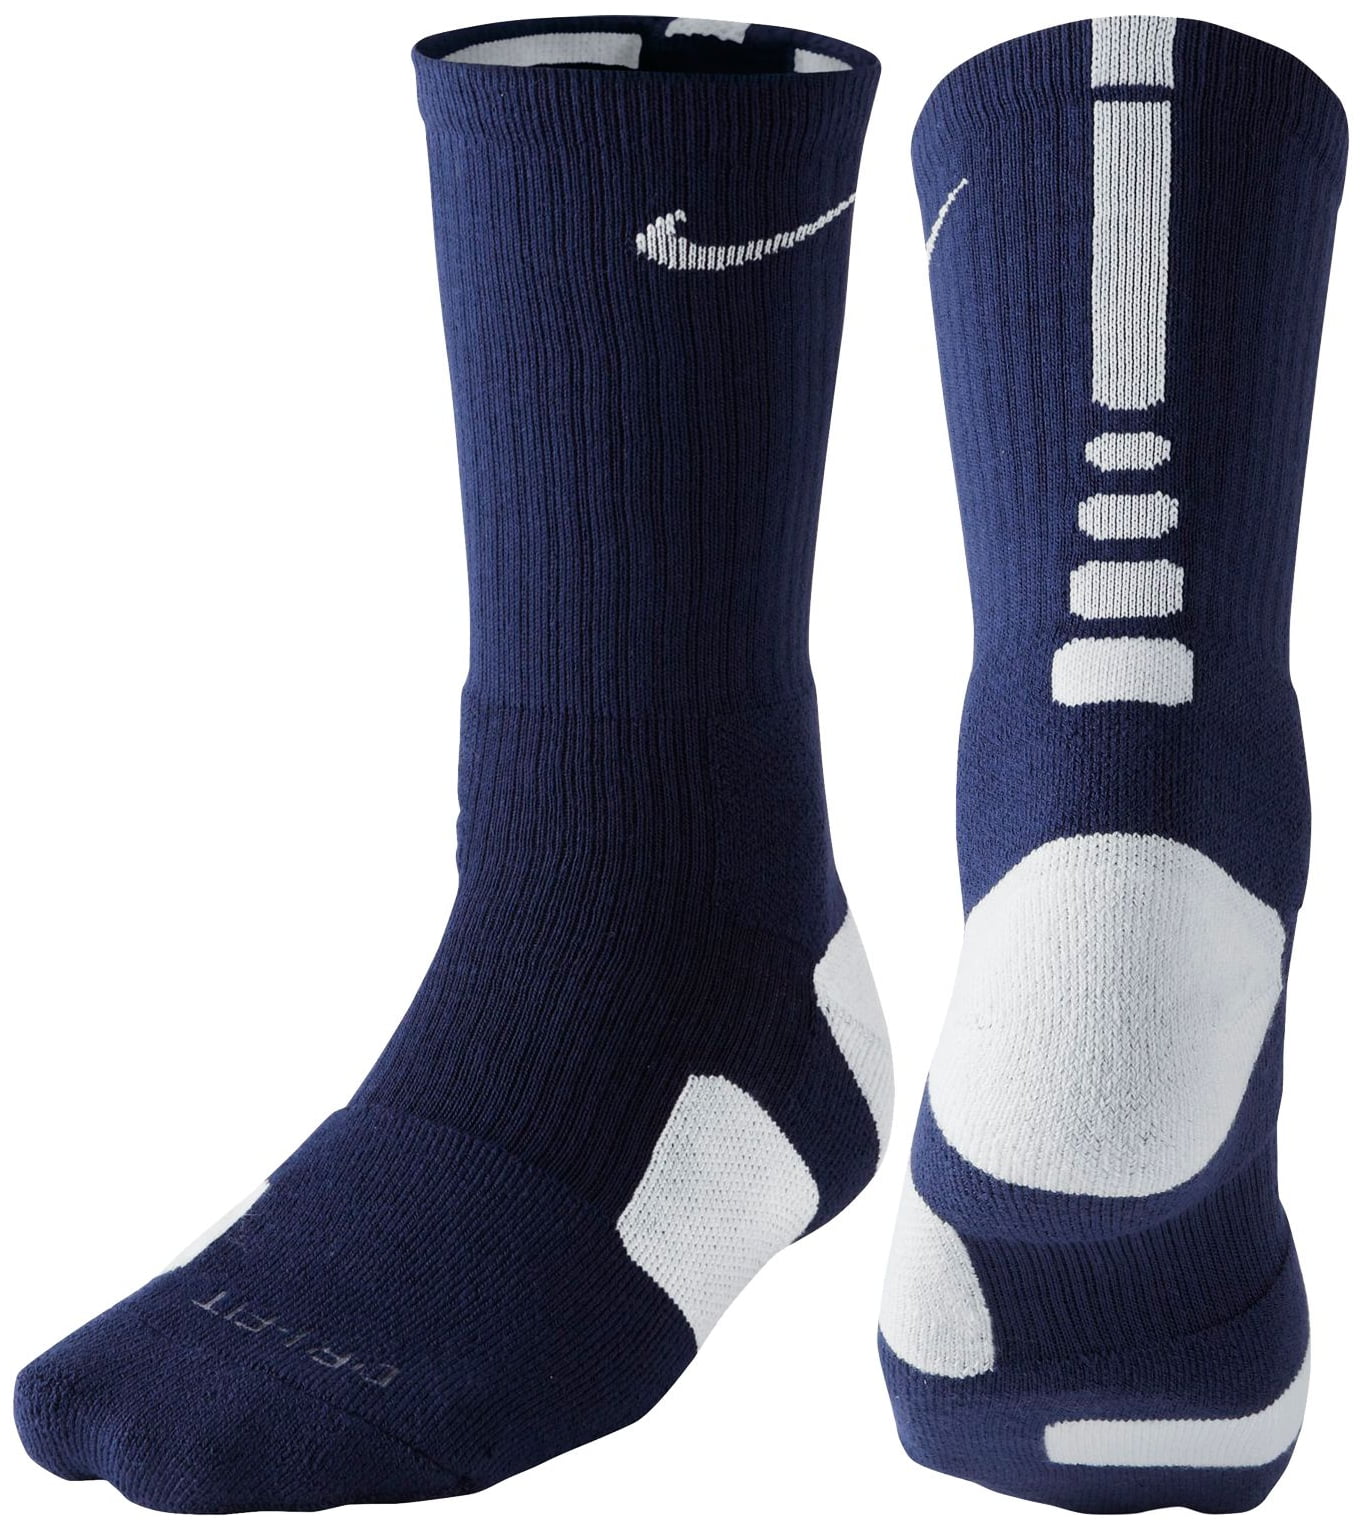 dri-fit elite 1.0 crew basketball socks xl) - Walmart.com